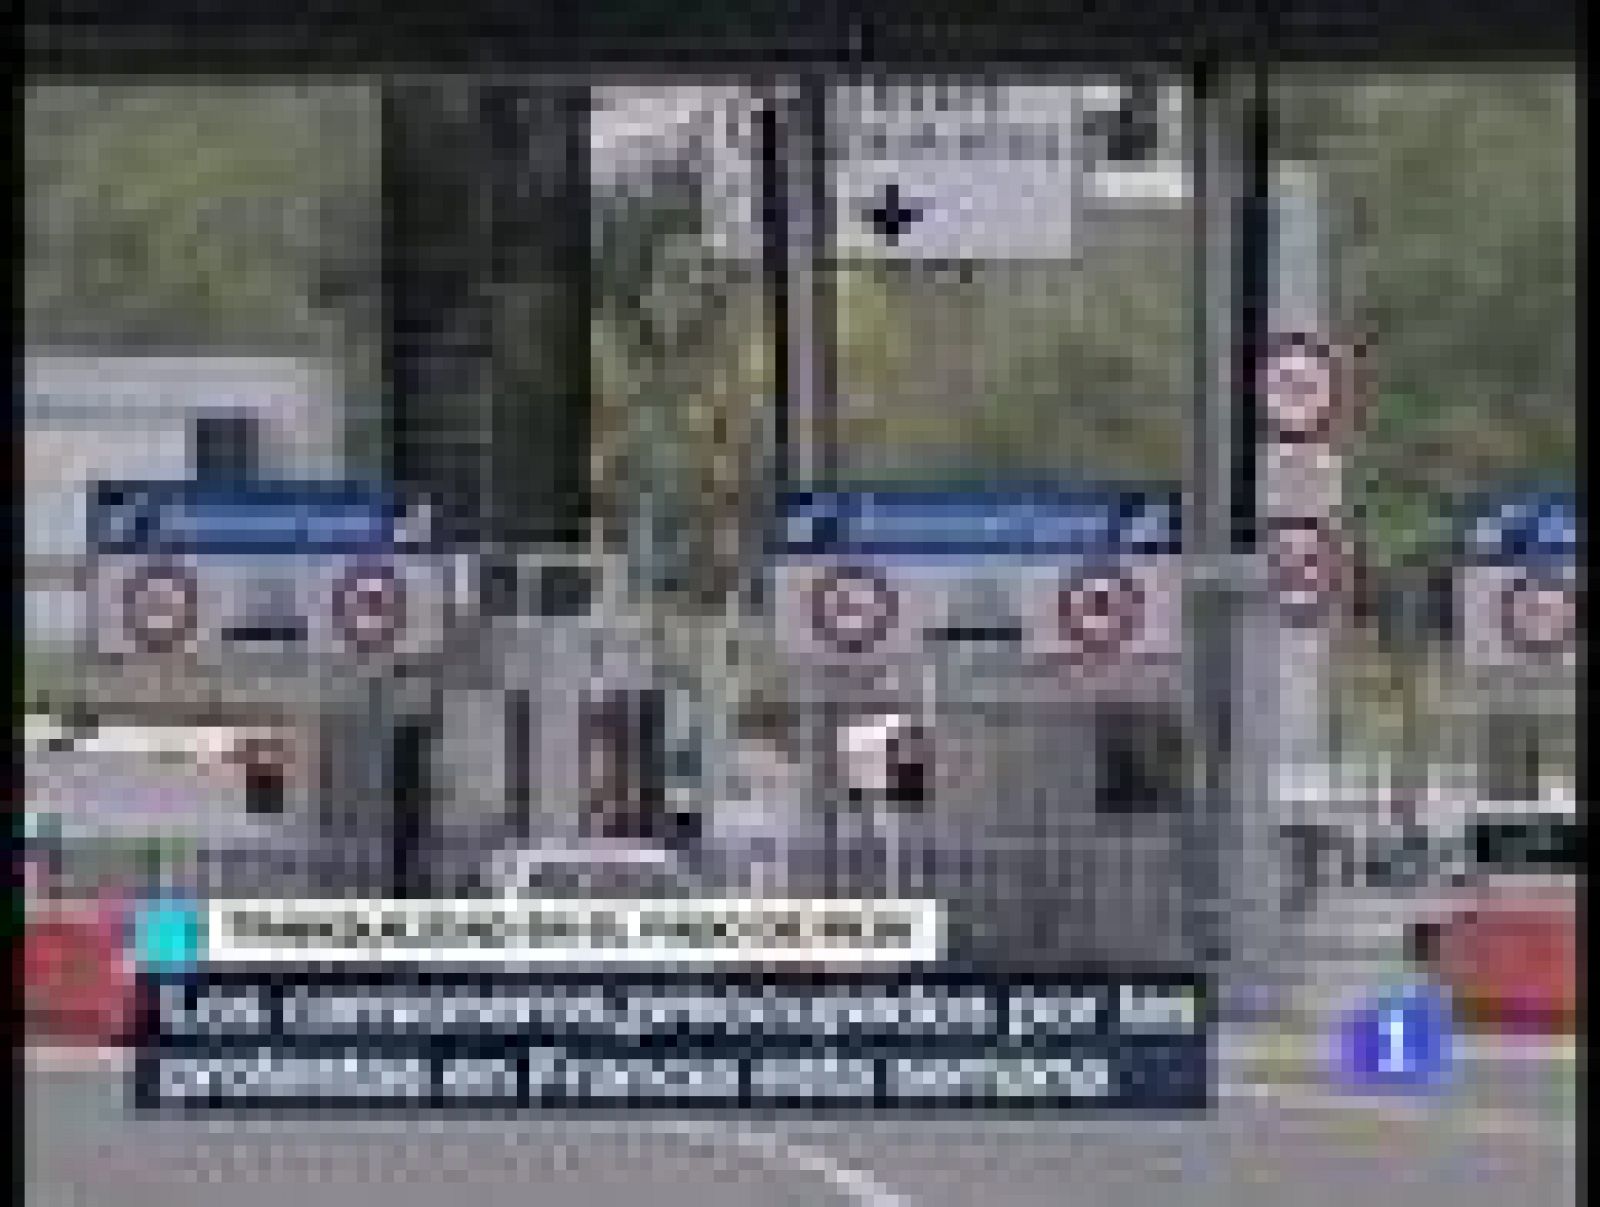  Los camioneros españoles cruzan la frontera hacia Francia sin problemas